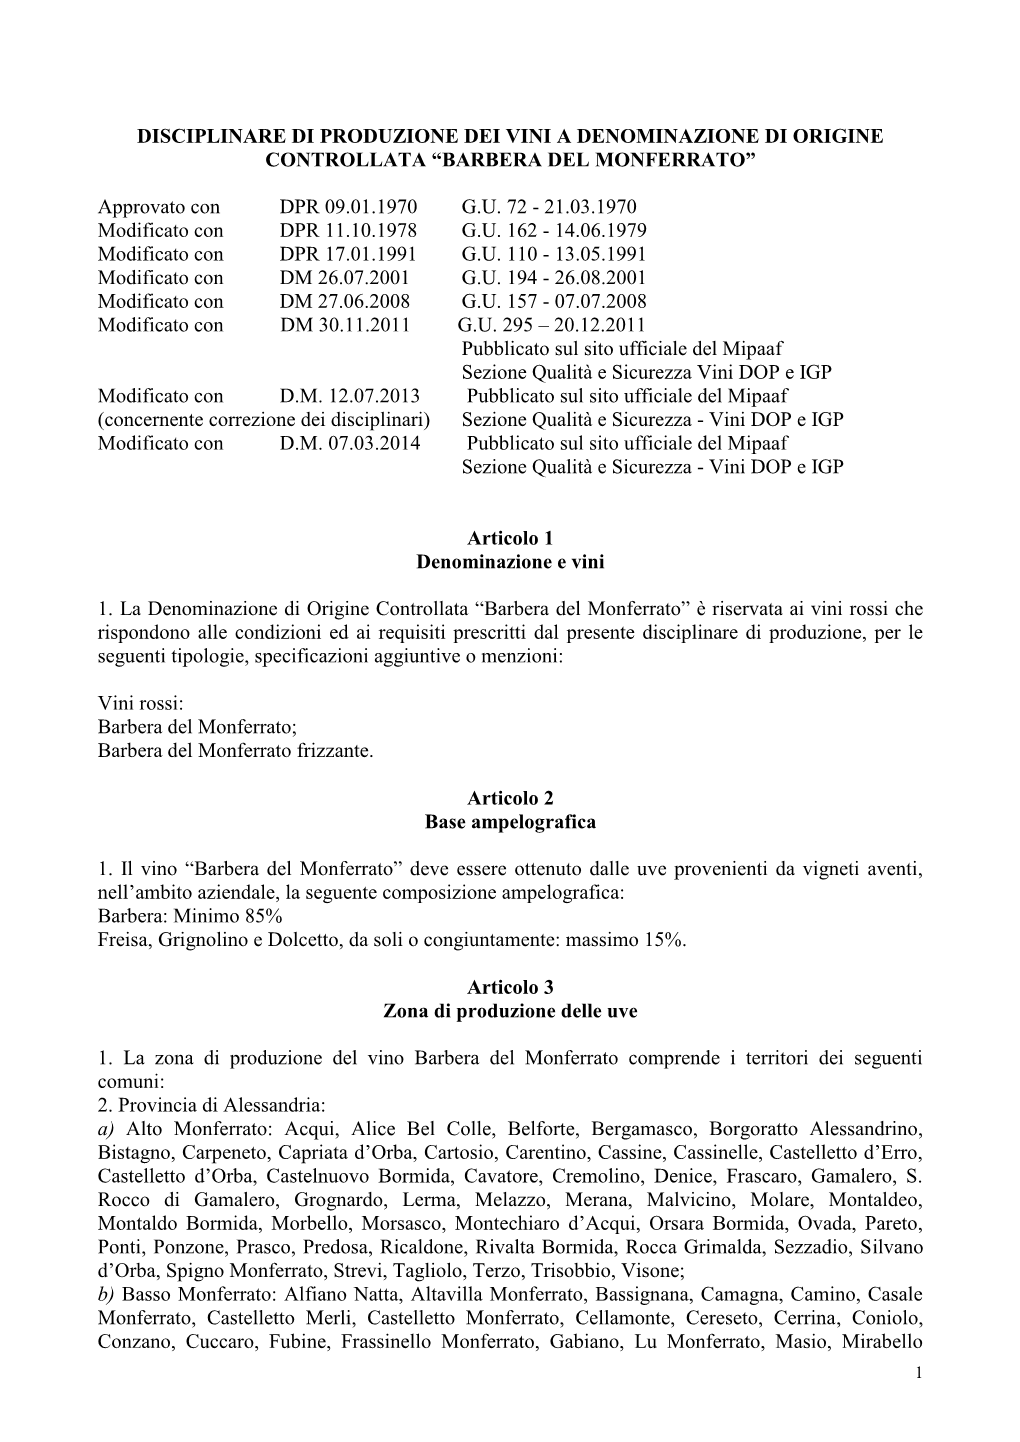 DISCIPLINARE DI PRODUZIONE DEI VINI a DENOMINAZIONE DI ORIGINE CONTROLLATA “BARBERA DEL MONFERRATO” Approvato Con DPR 09.01